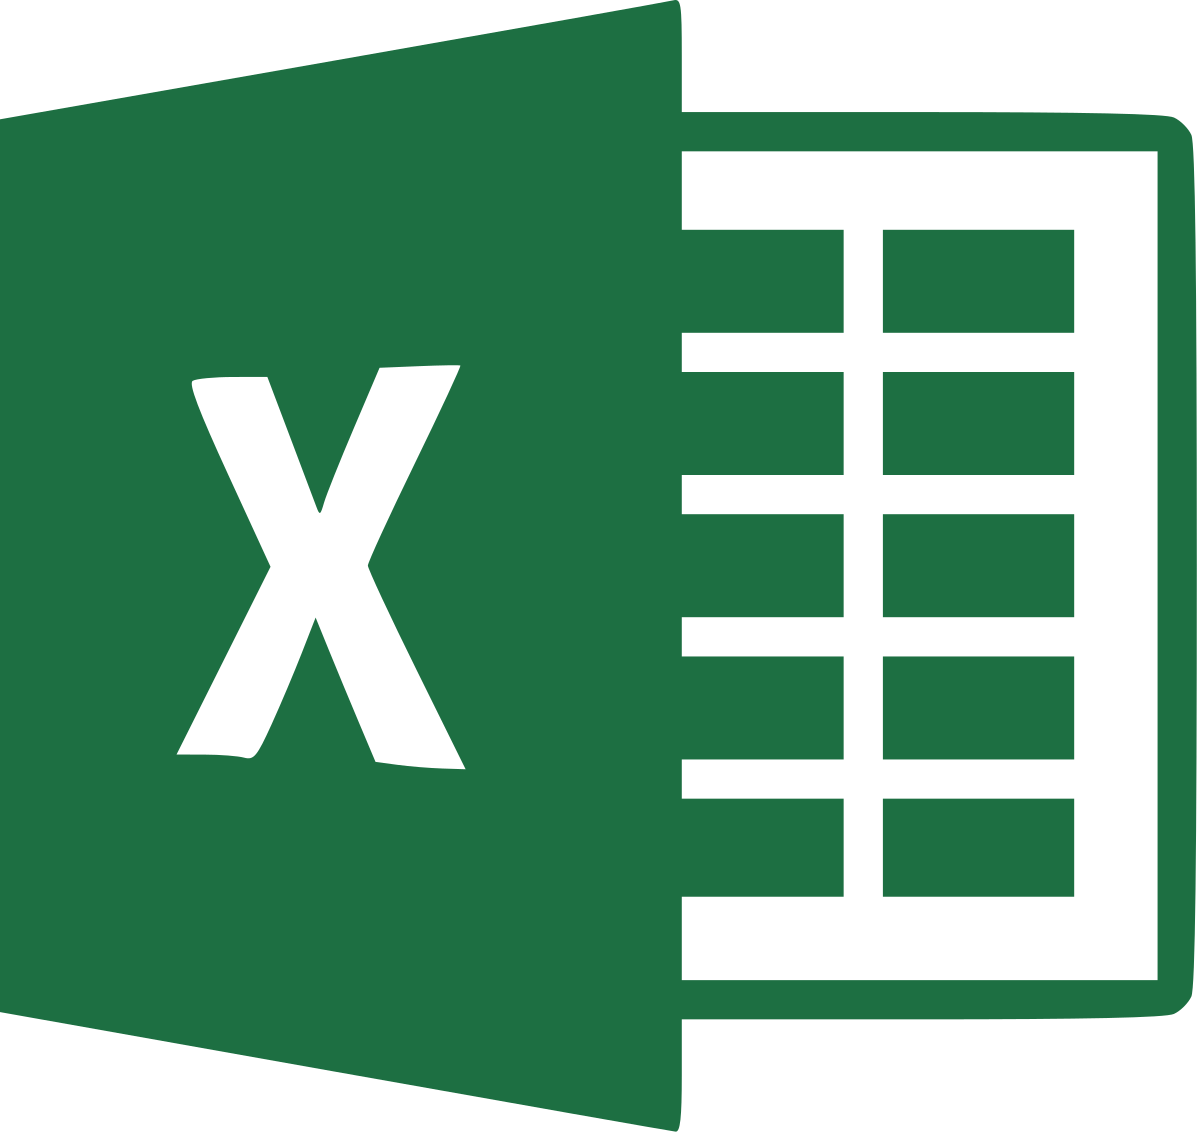 Revisiting Excel Interop